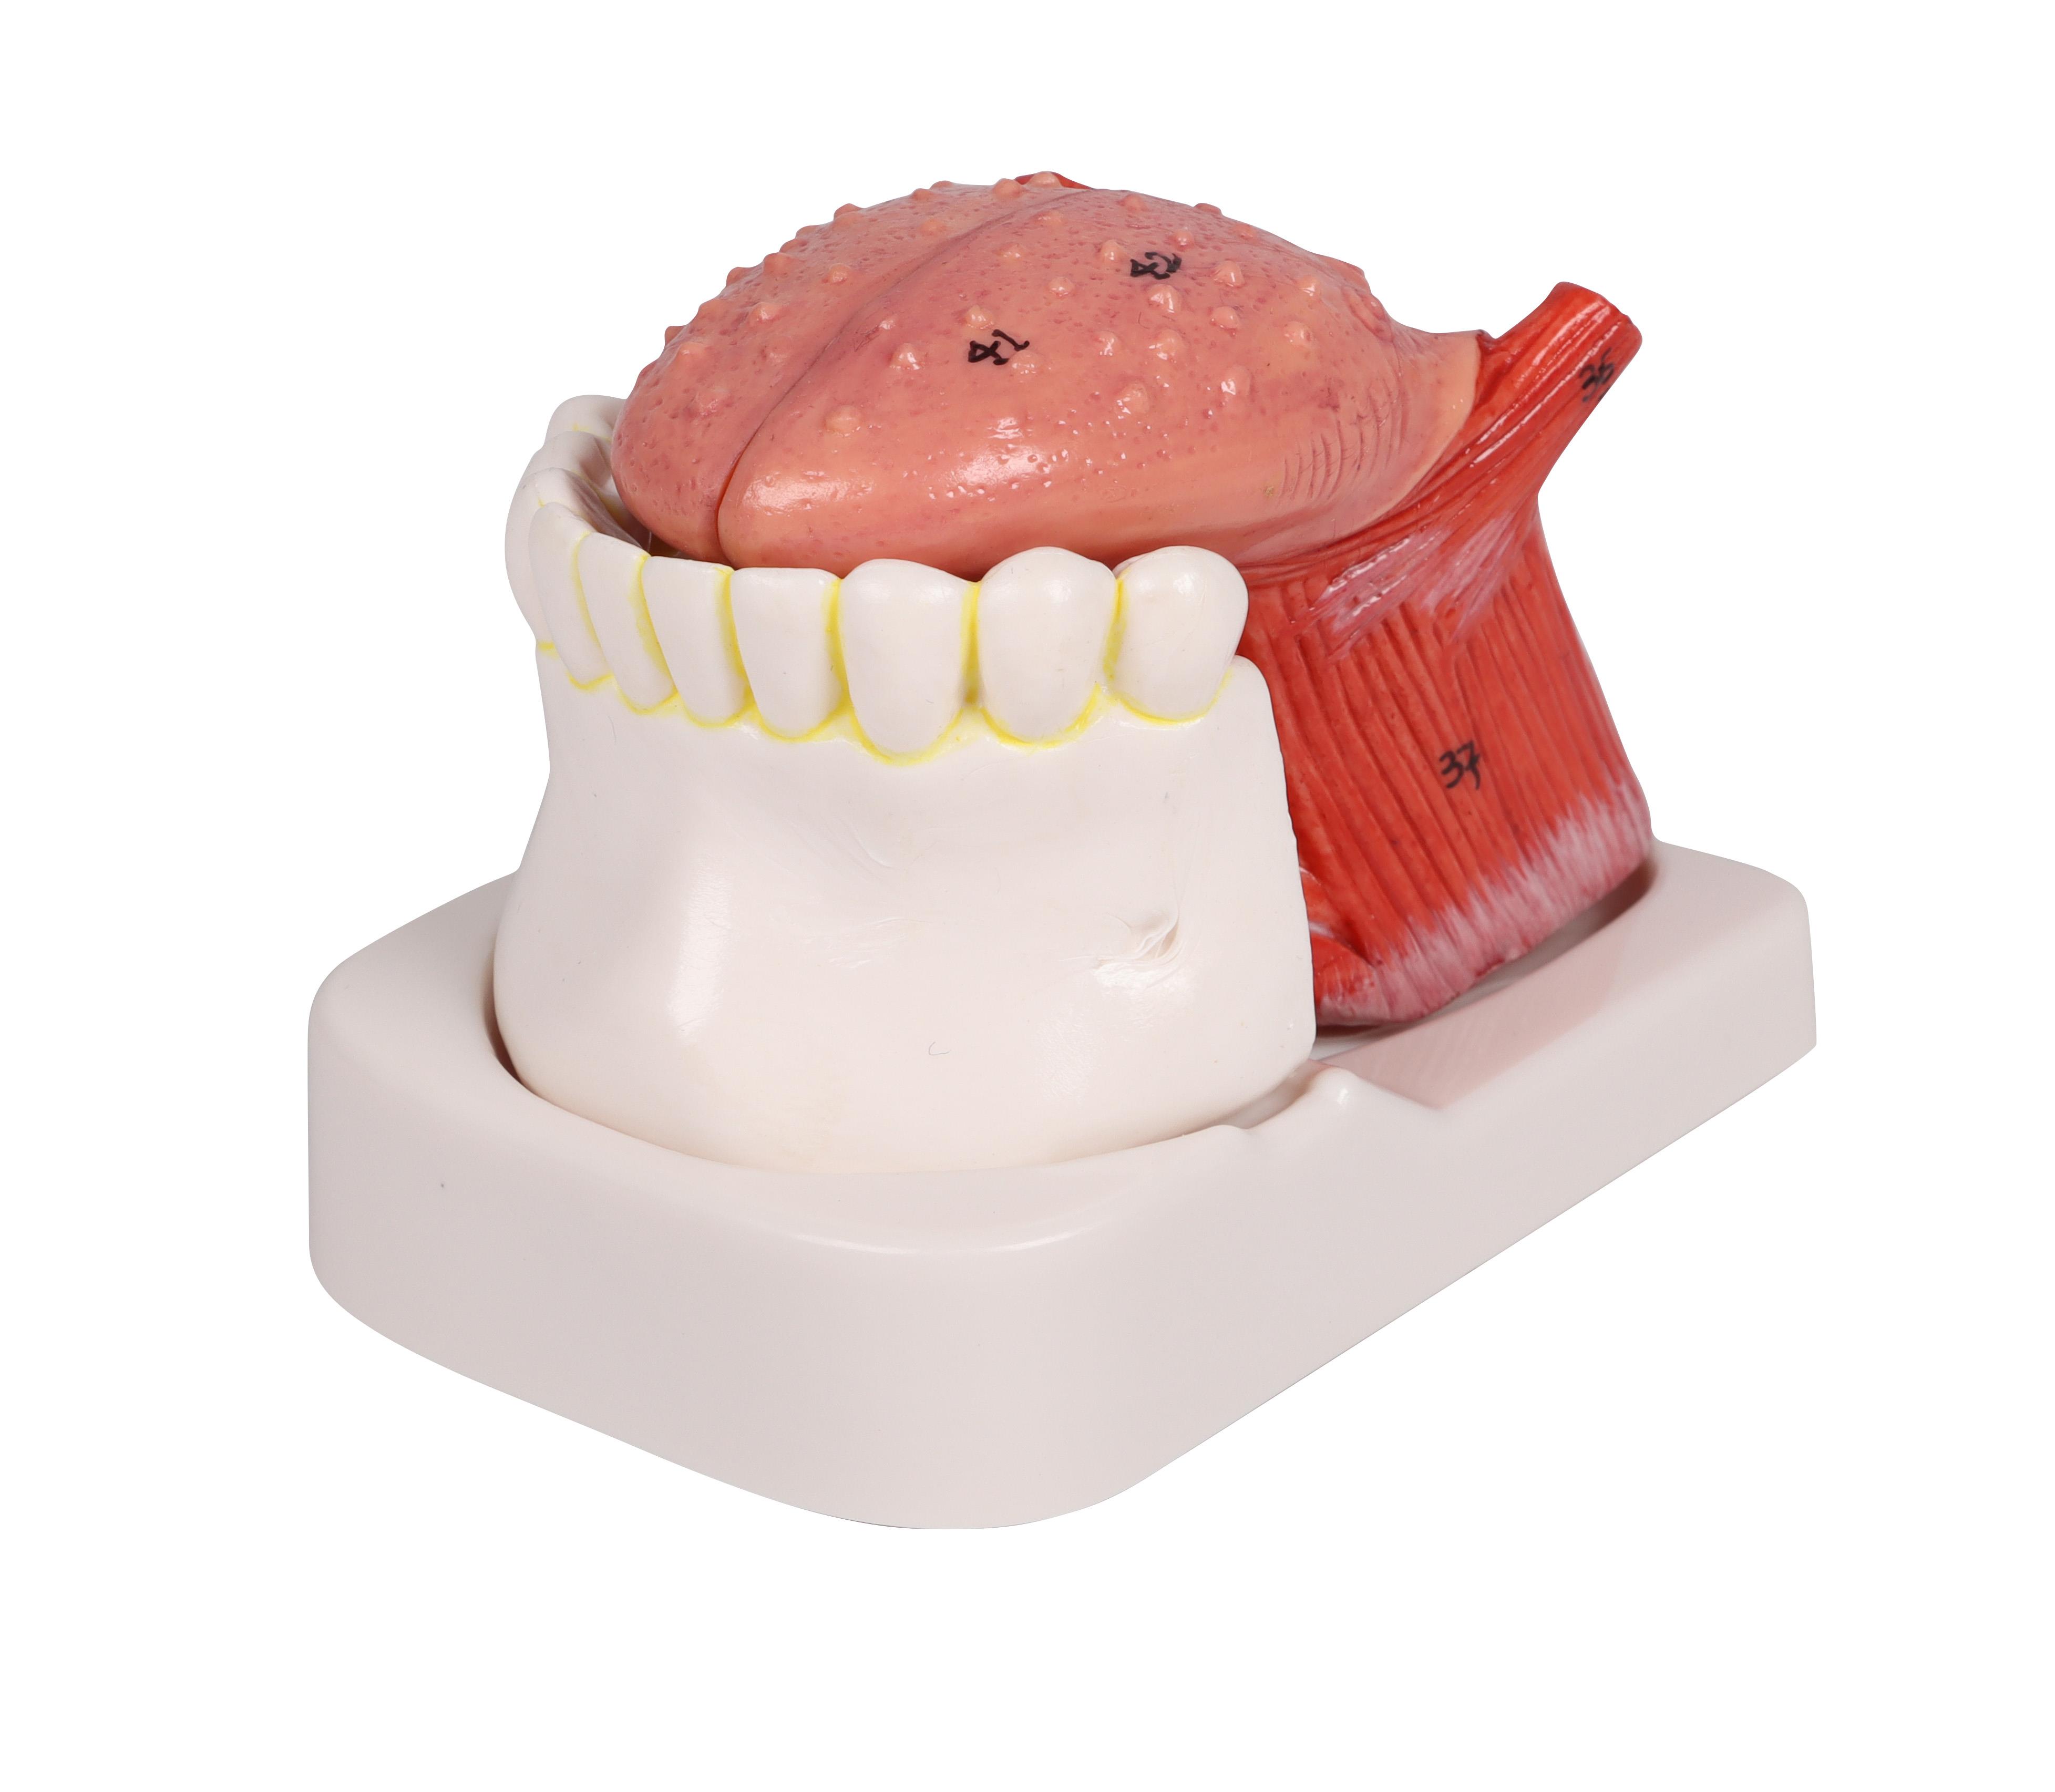 Zungen-und-Zahnmodell-lebensgroß-4-teilig